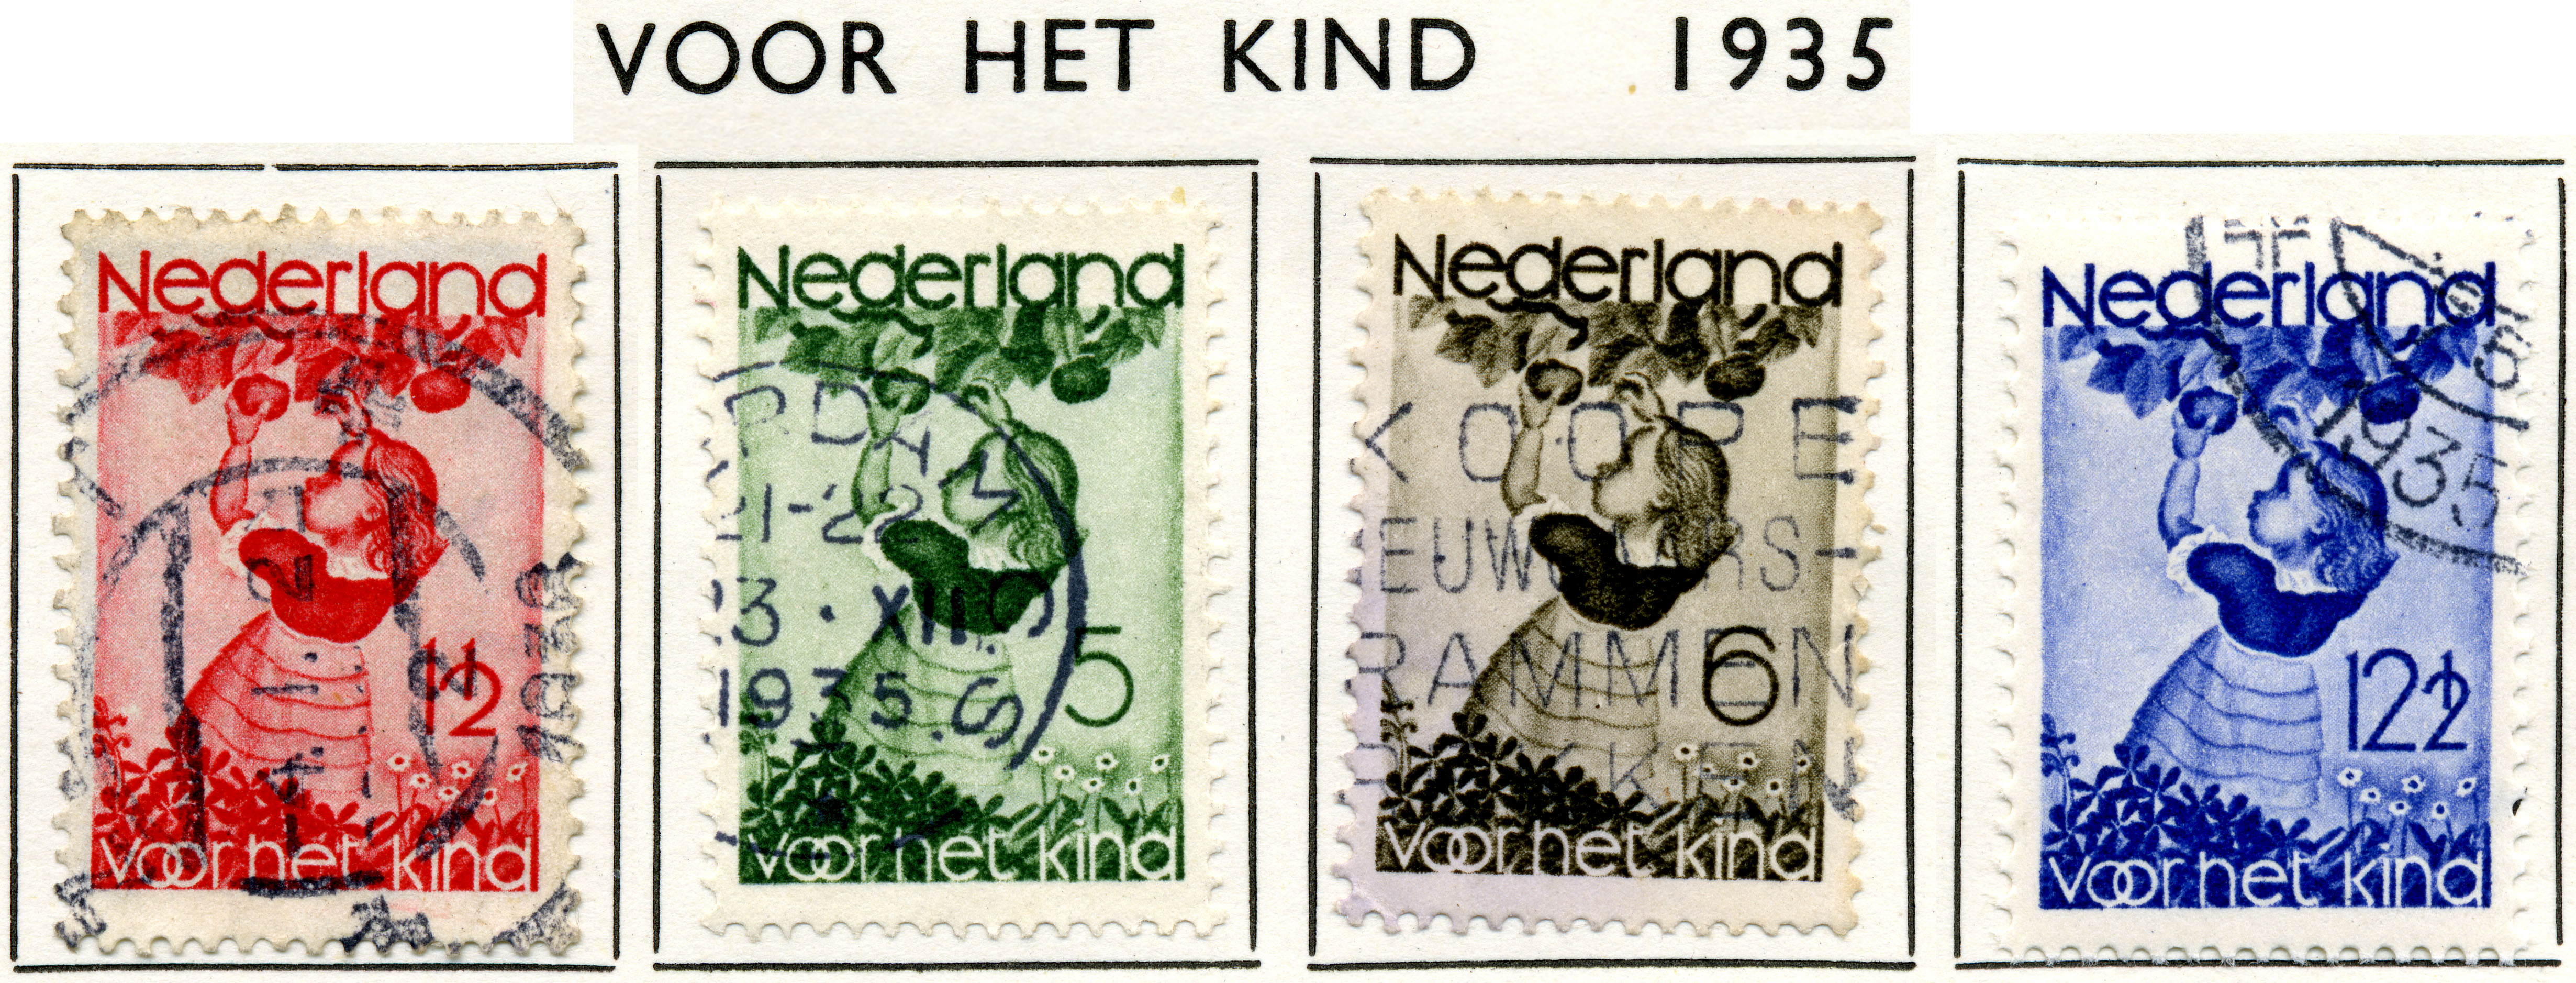 Postzegel 1935 voor het kind